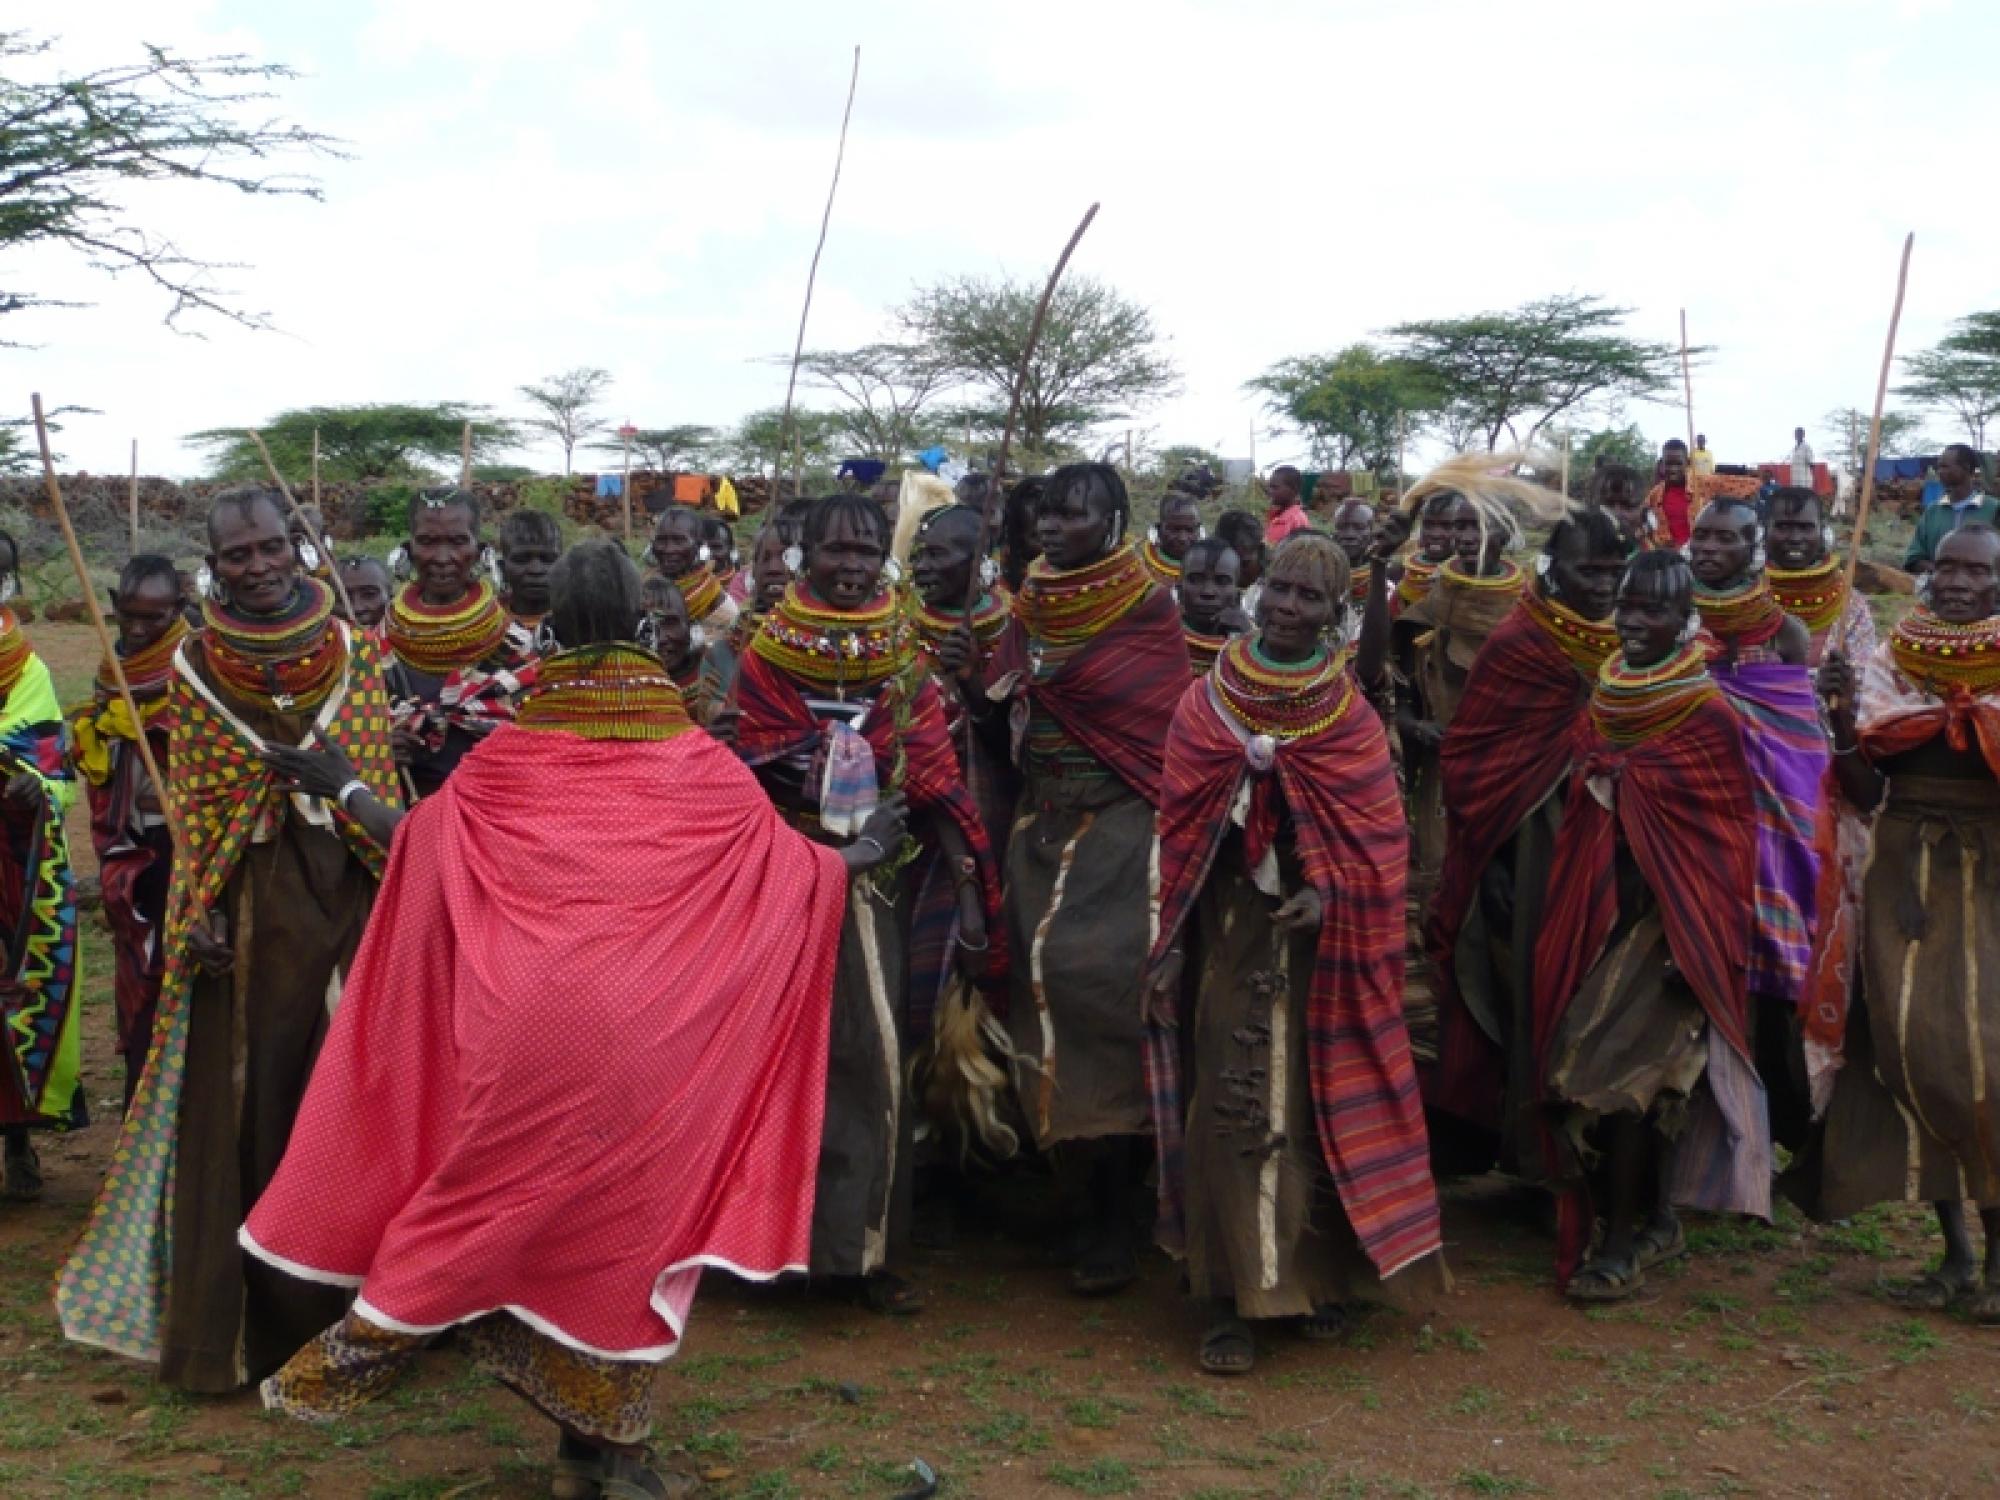 Tribal people in a ritual